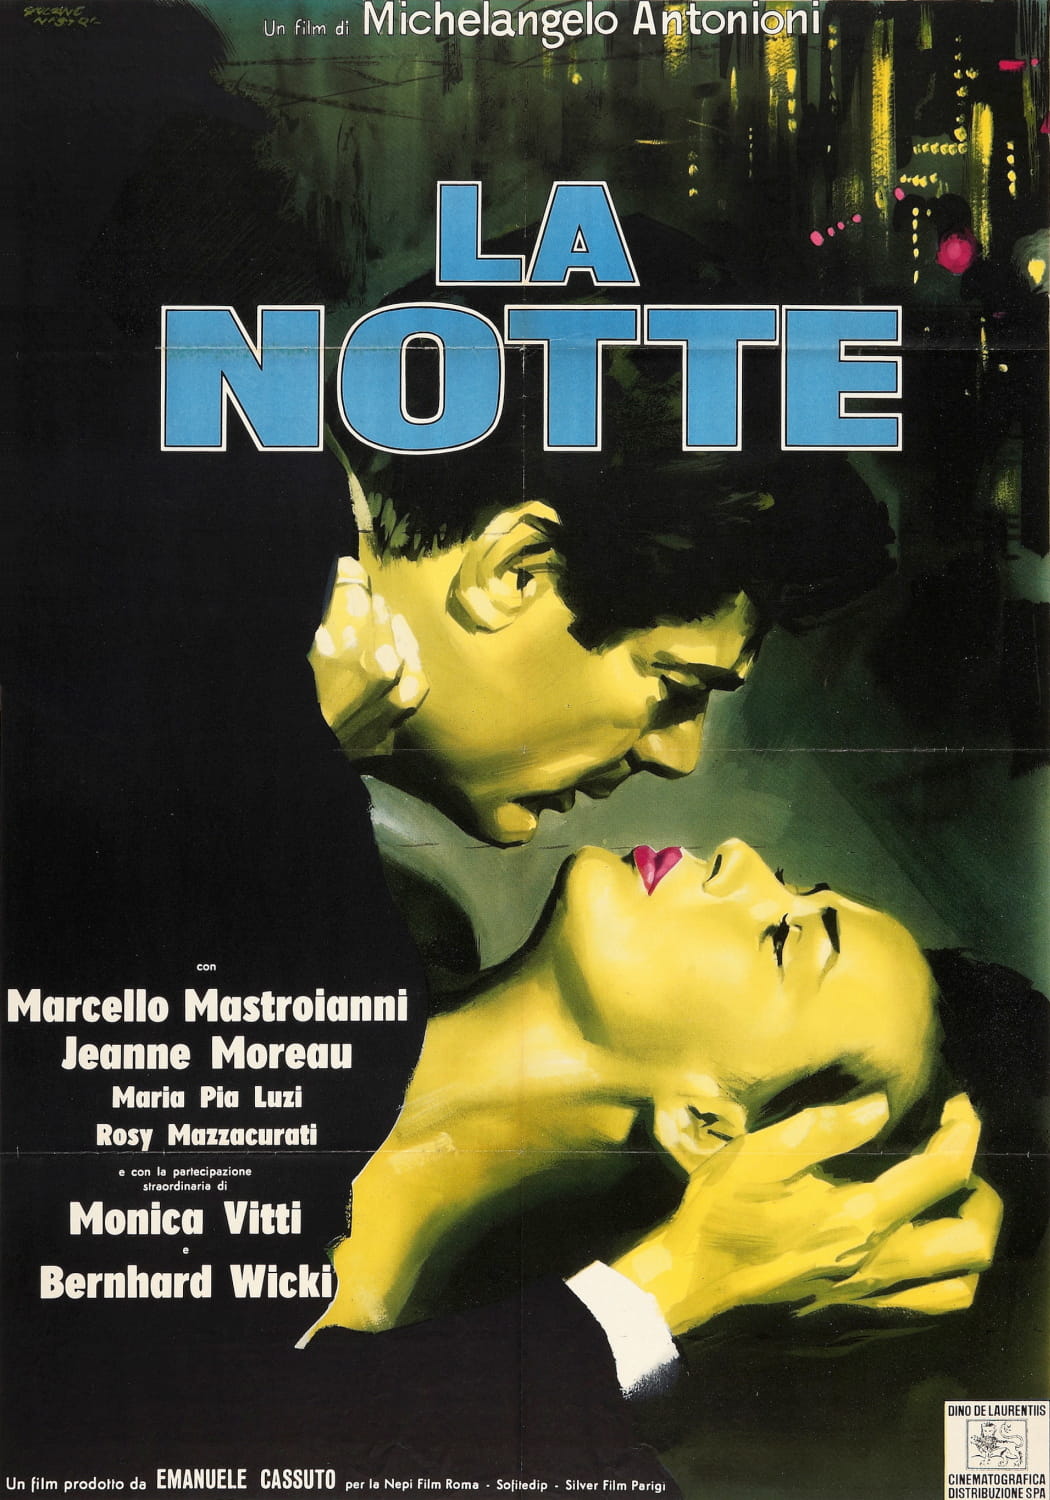 La notte - Film (1961)